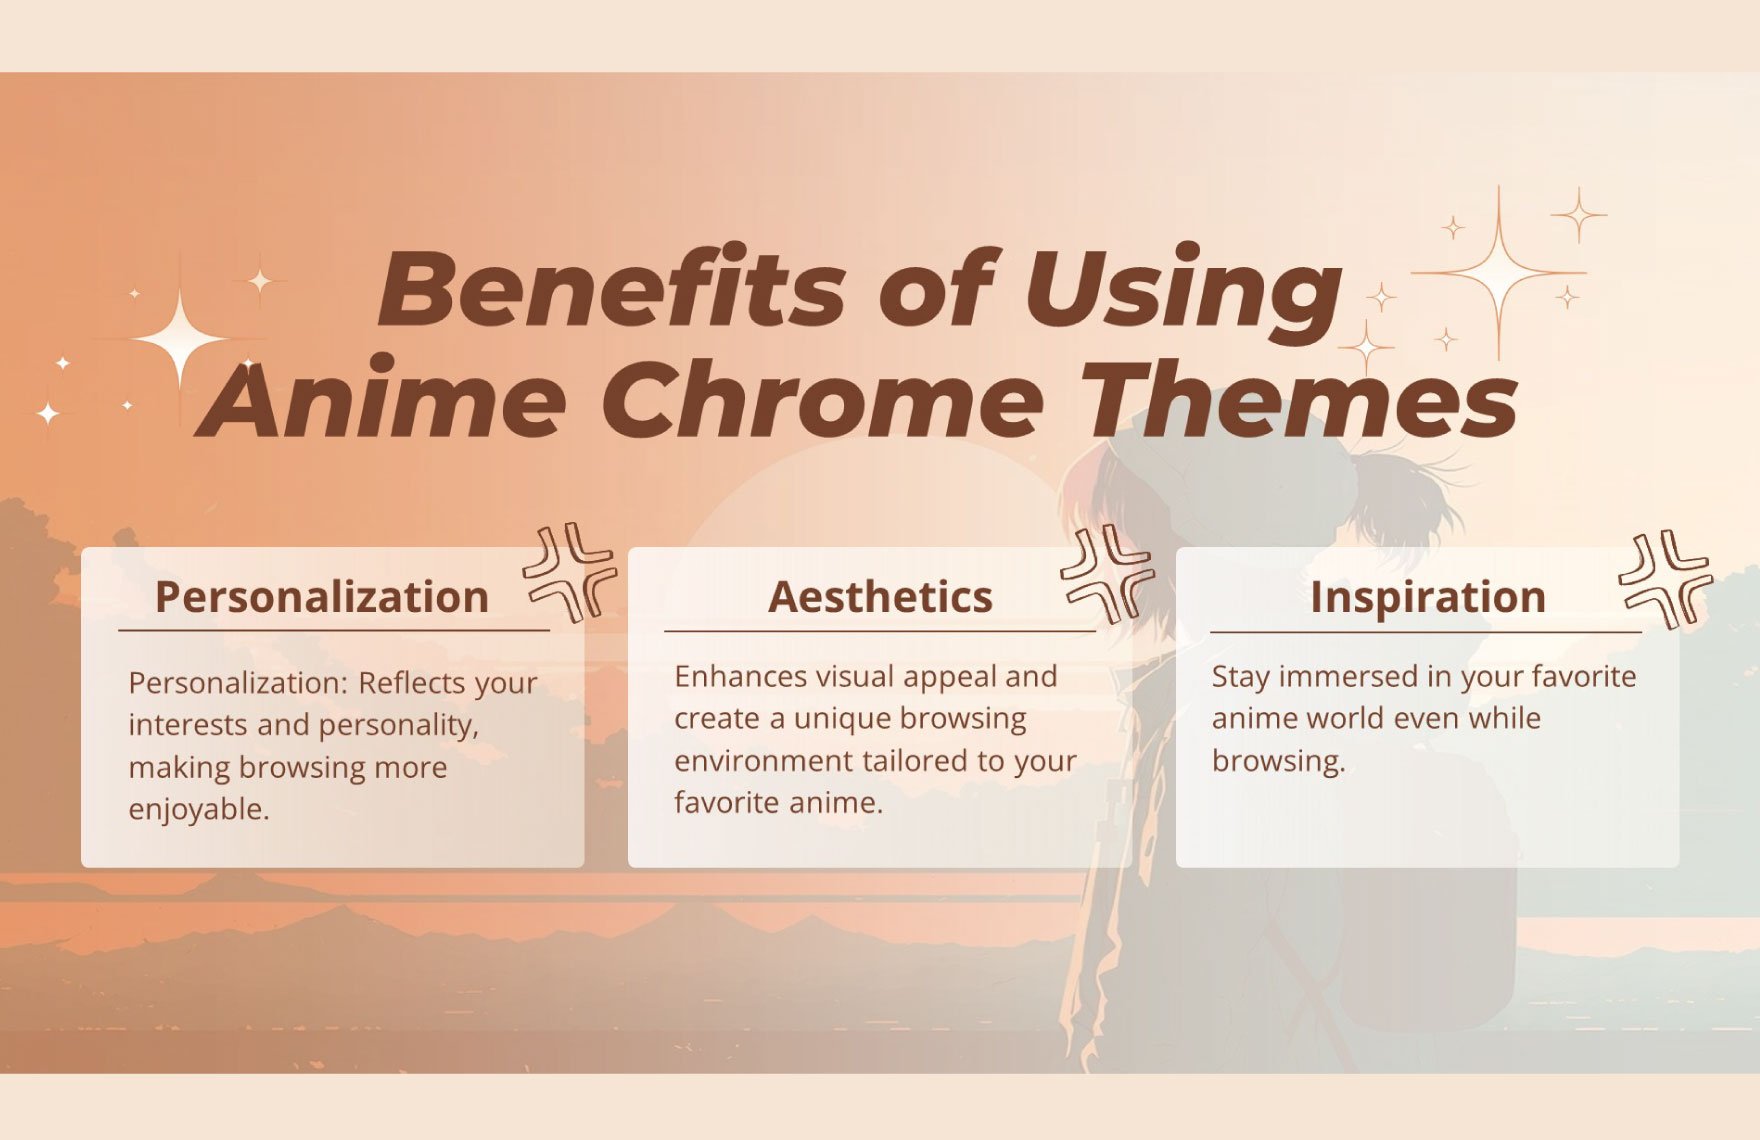 Anime Chrome Themes Template